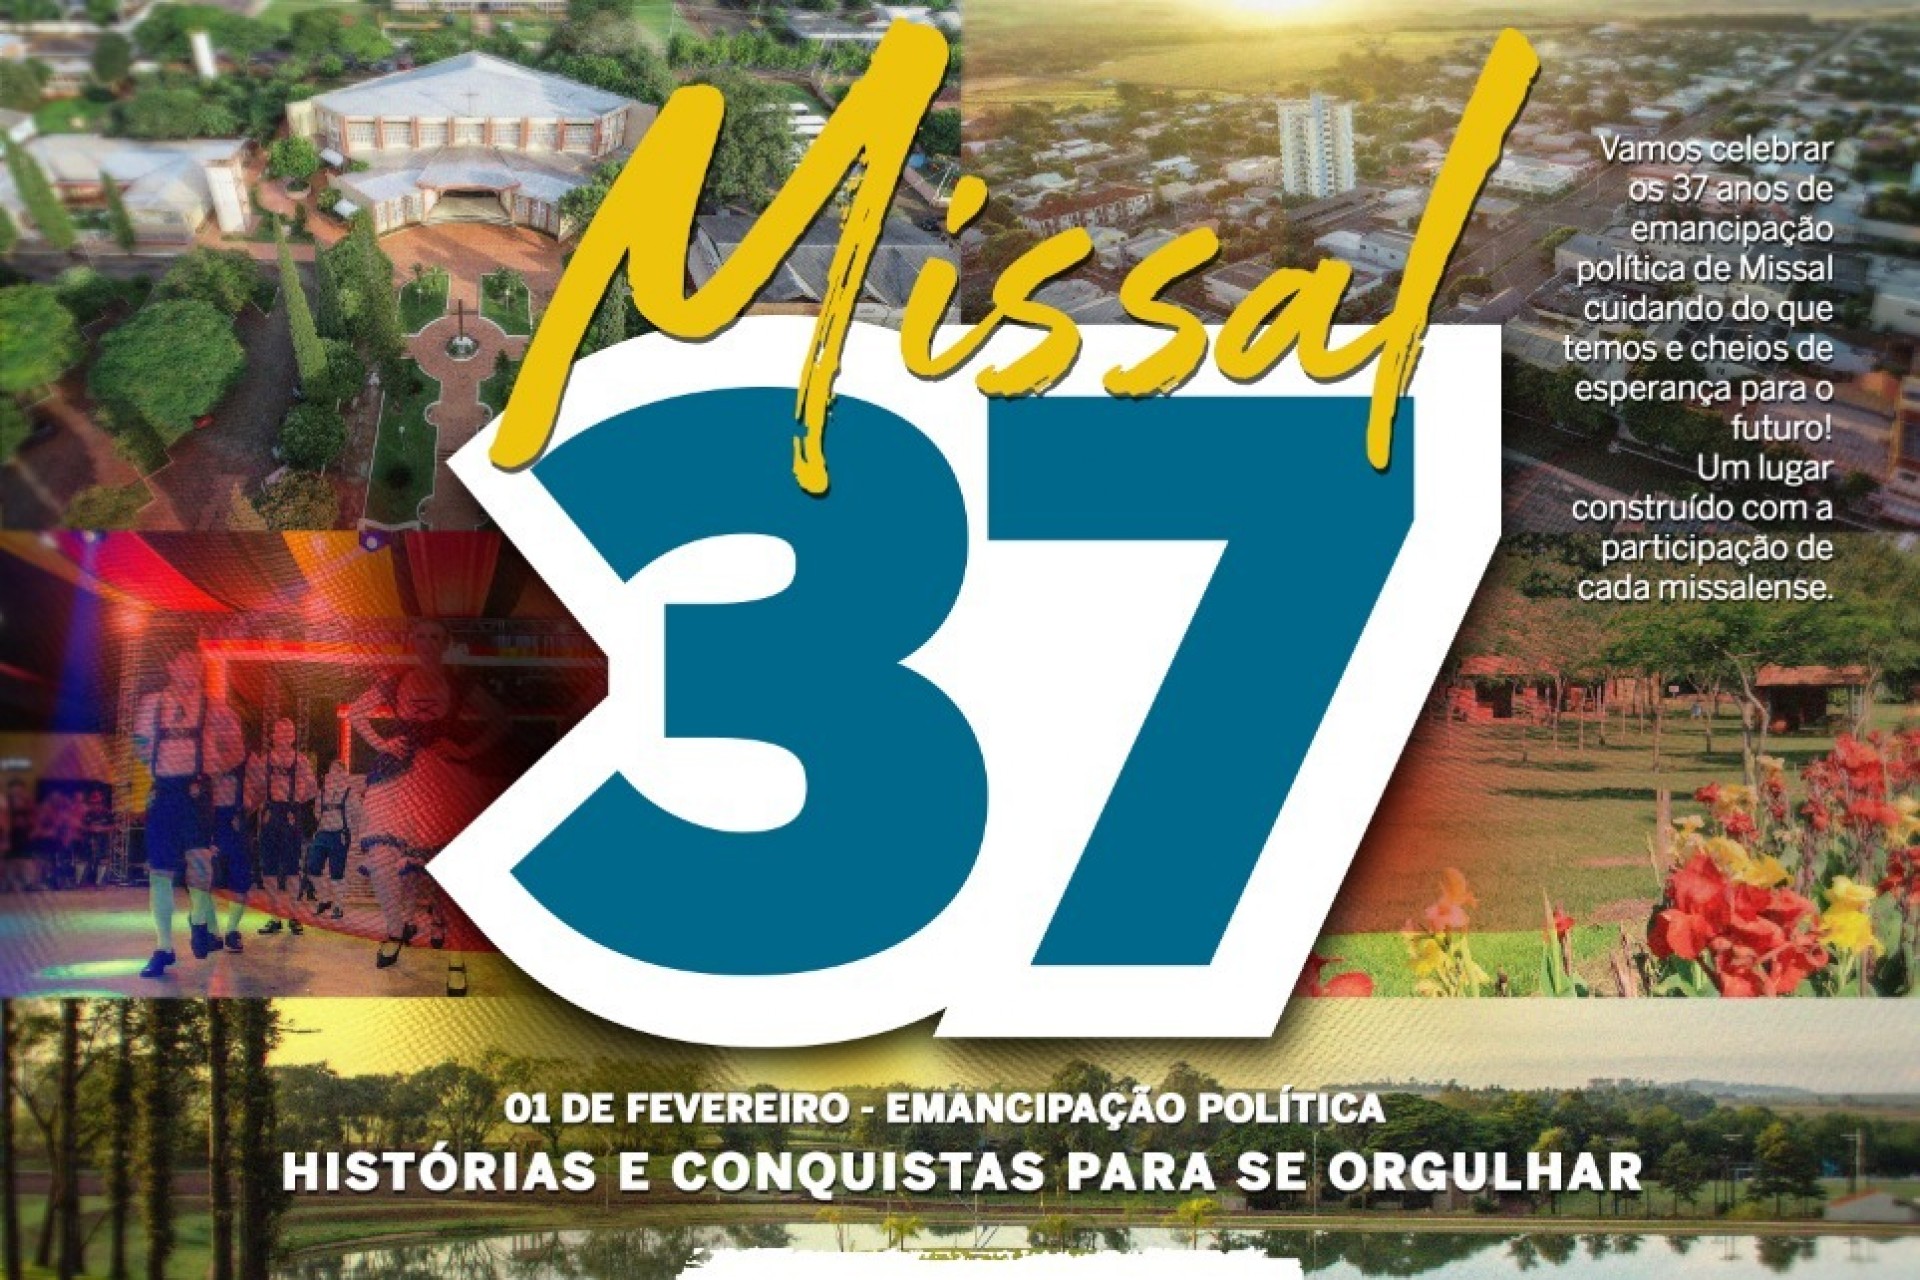 Dia 1º de fevereiro de 2020 Missal completa 37 anos de Emancipação